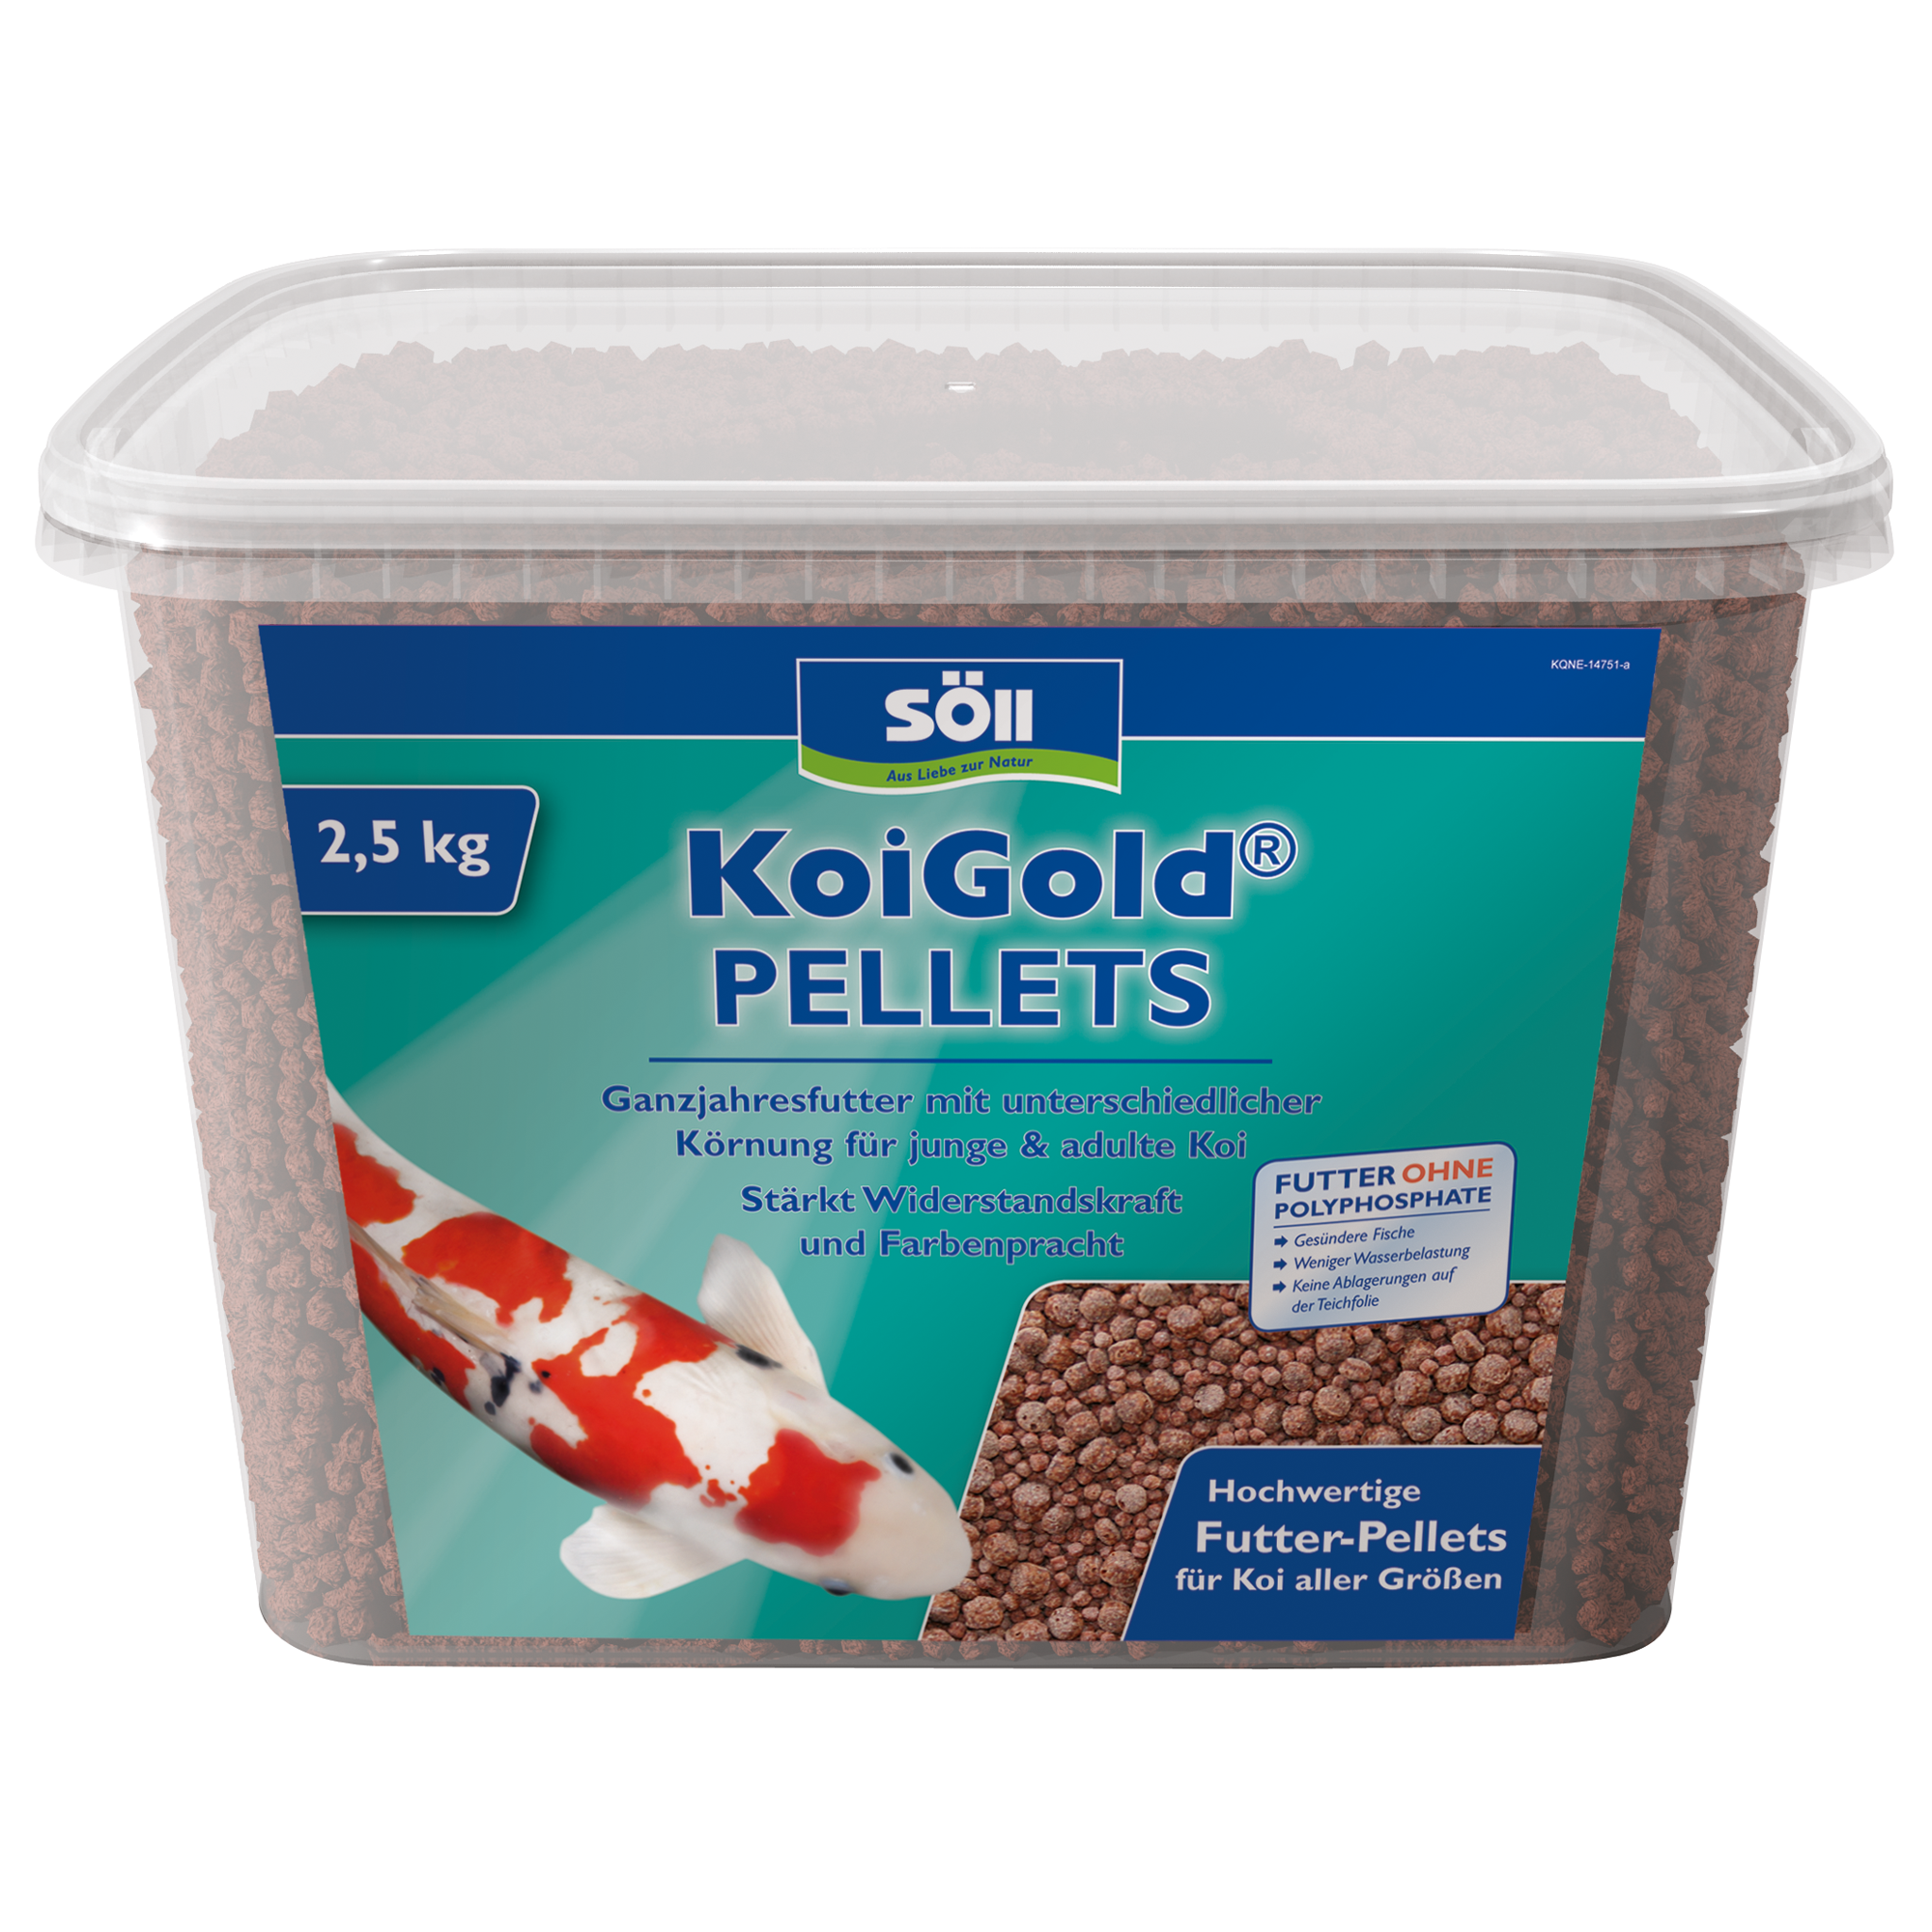 KoiGold Futter-Pellets 2,4 kg + product picture